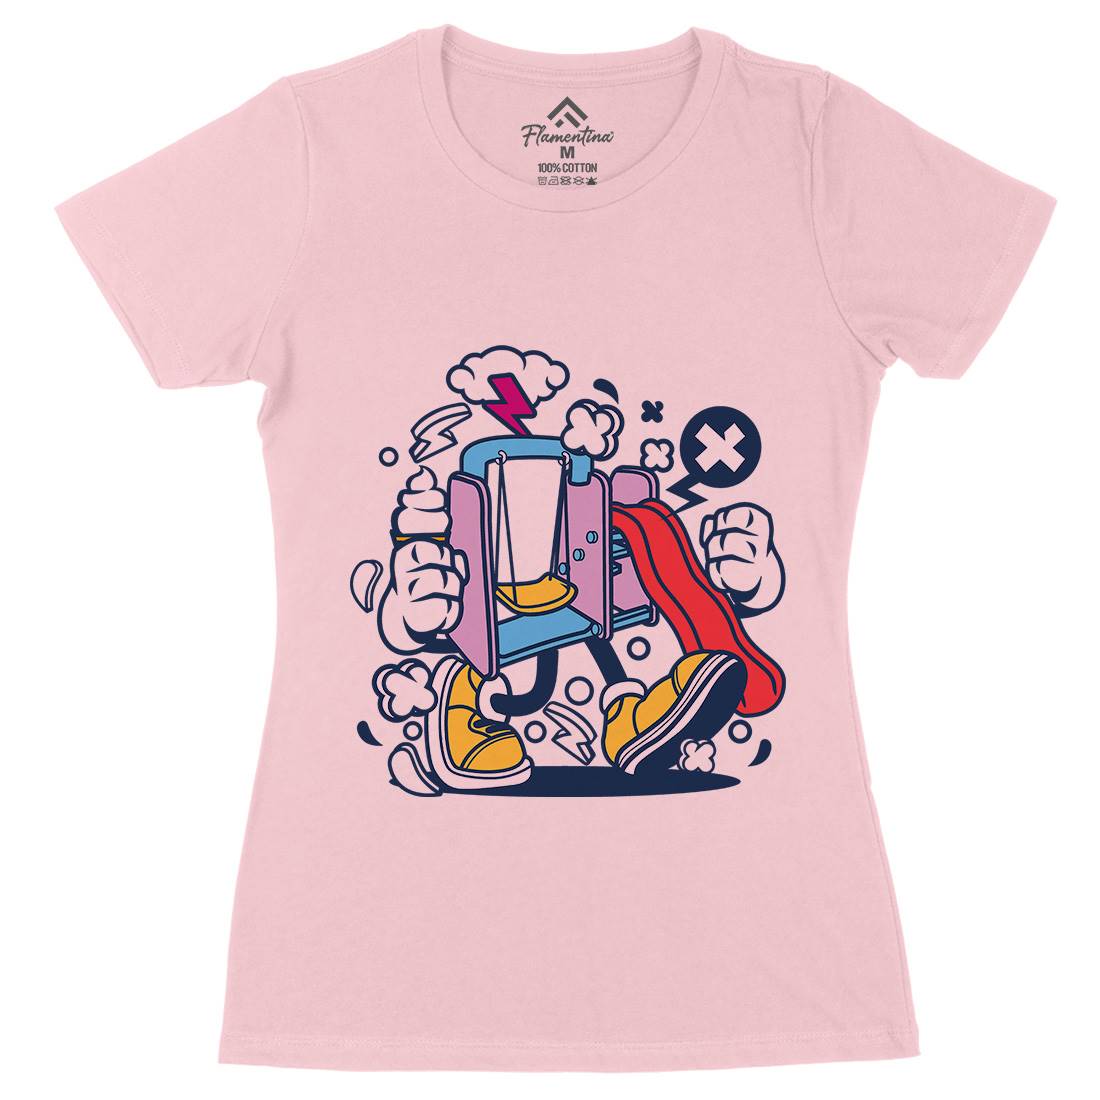 Playground Slide Womens Organic Crew Neck T-Shirt Retro C248